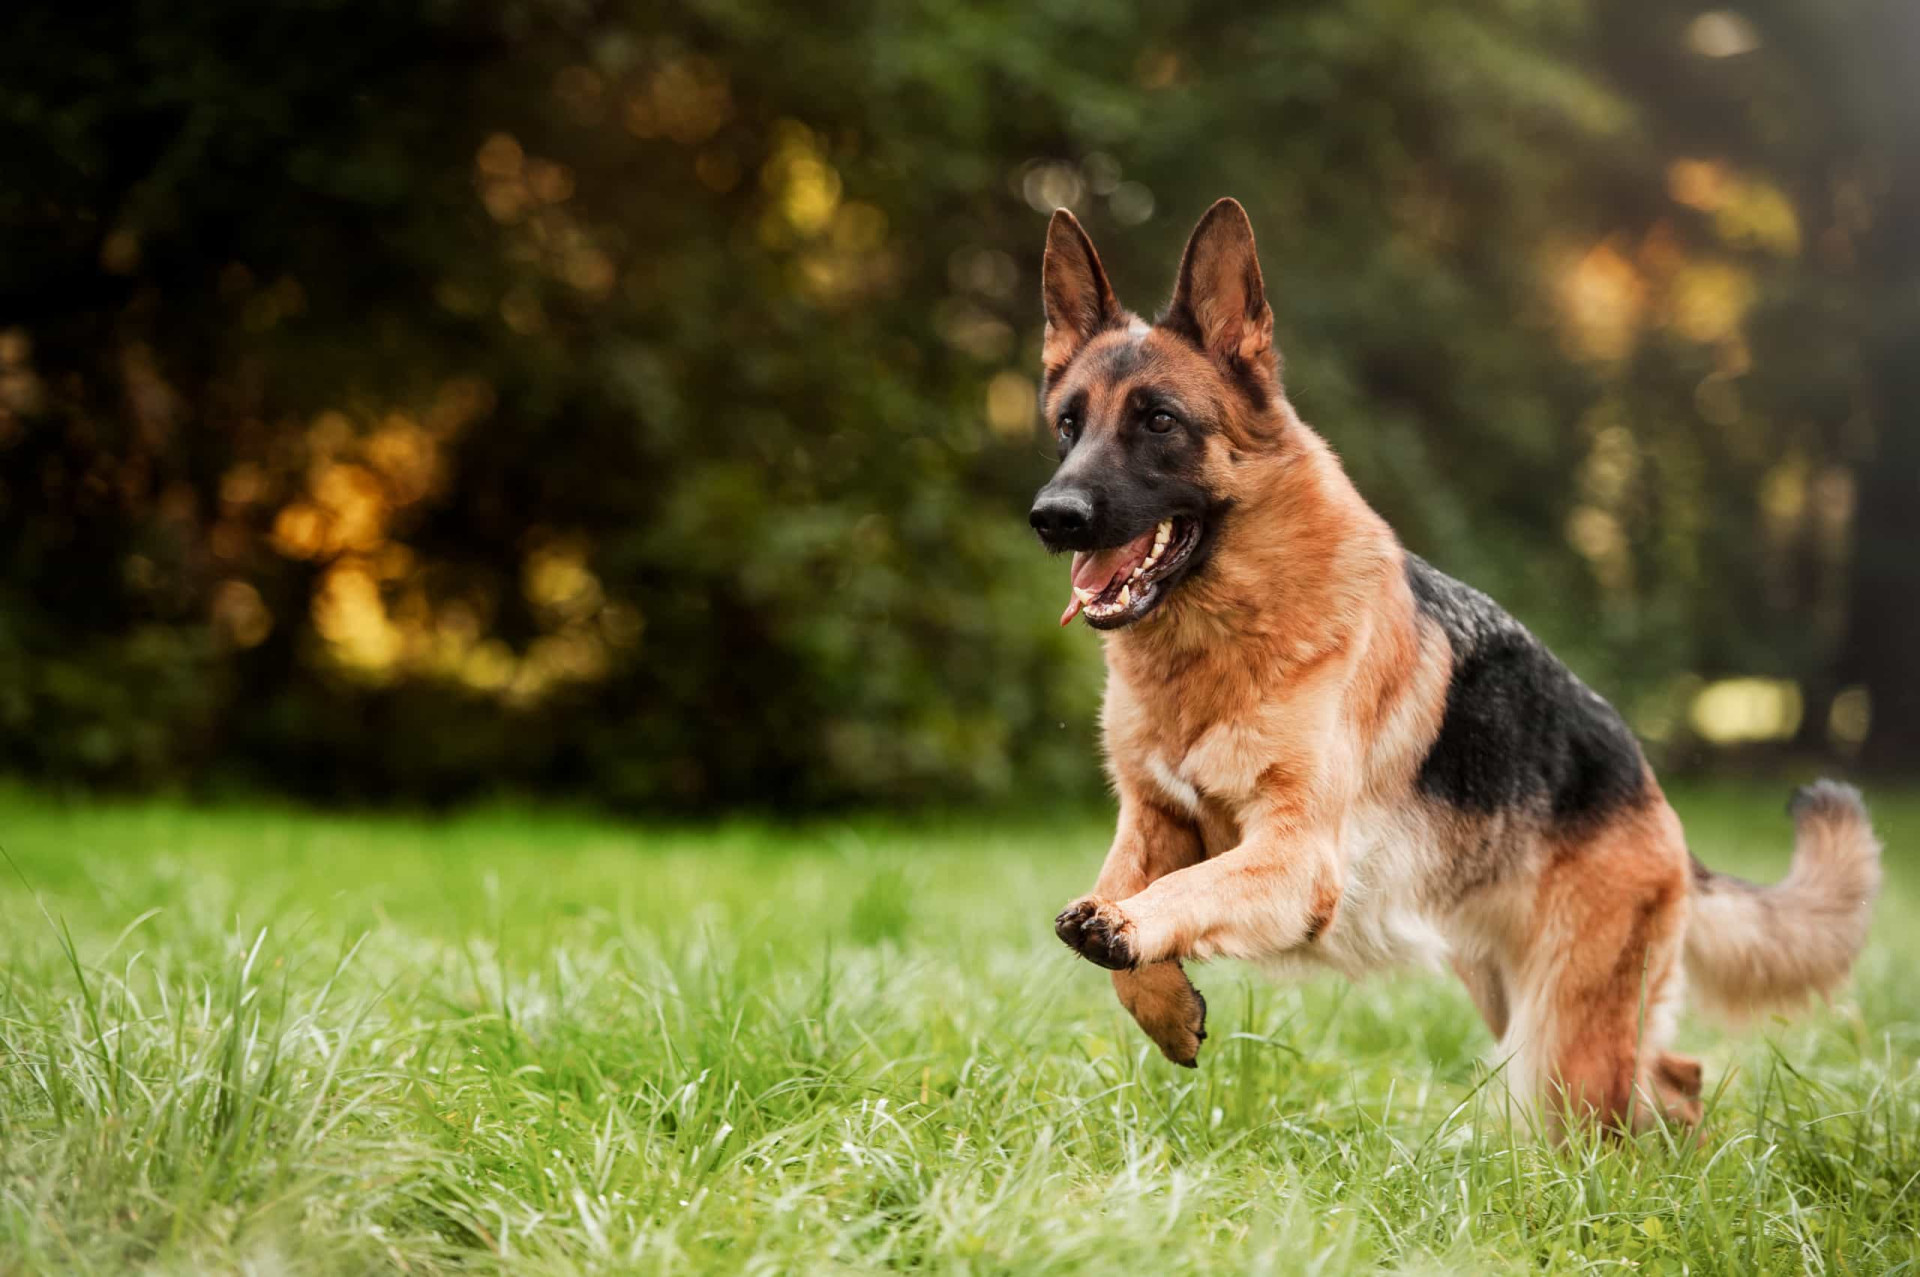 <p>Aussi connue sous le nom de berger alsacien, cette race de chien est intelligente, fidèle et obéissante (un dressage précoce les dissuadera d'être trop possessifs). Ils pèsent entre 22 et 40 kg et vivent de 9 à 13 ans.</p>